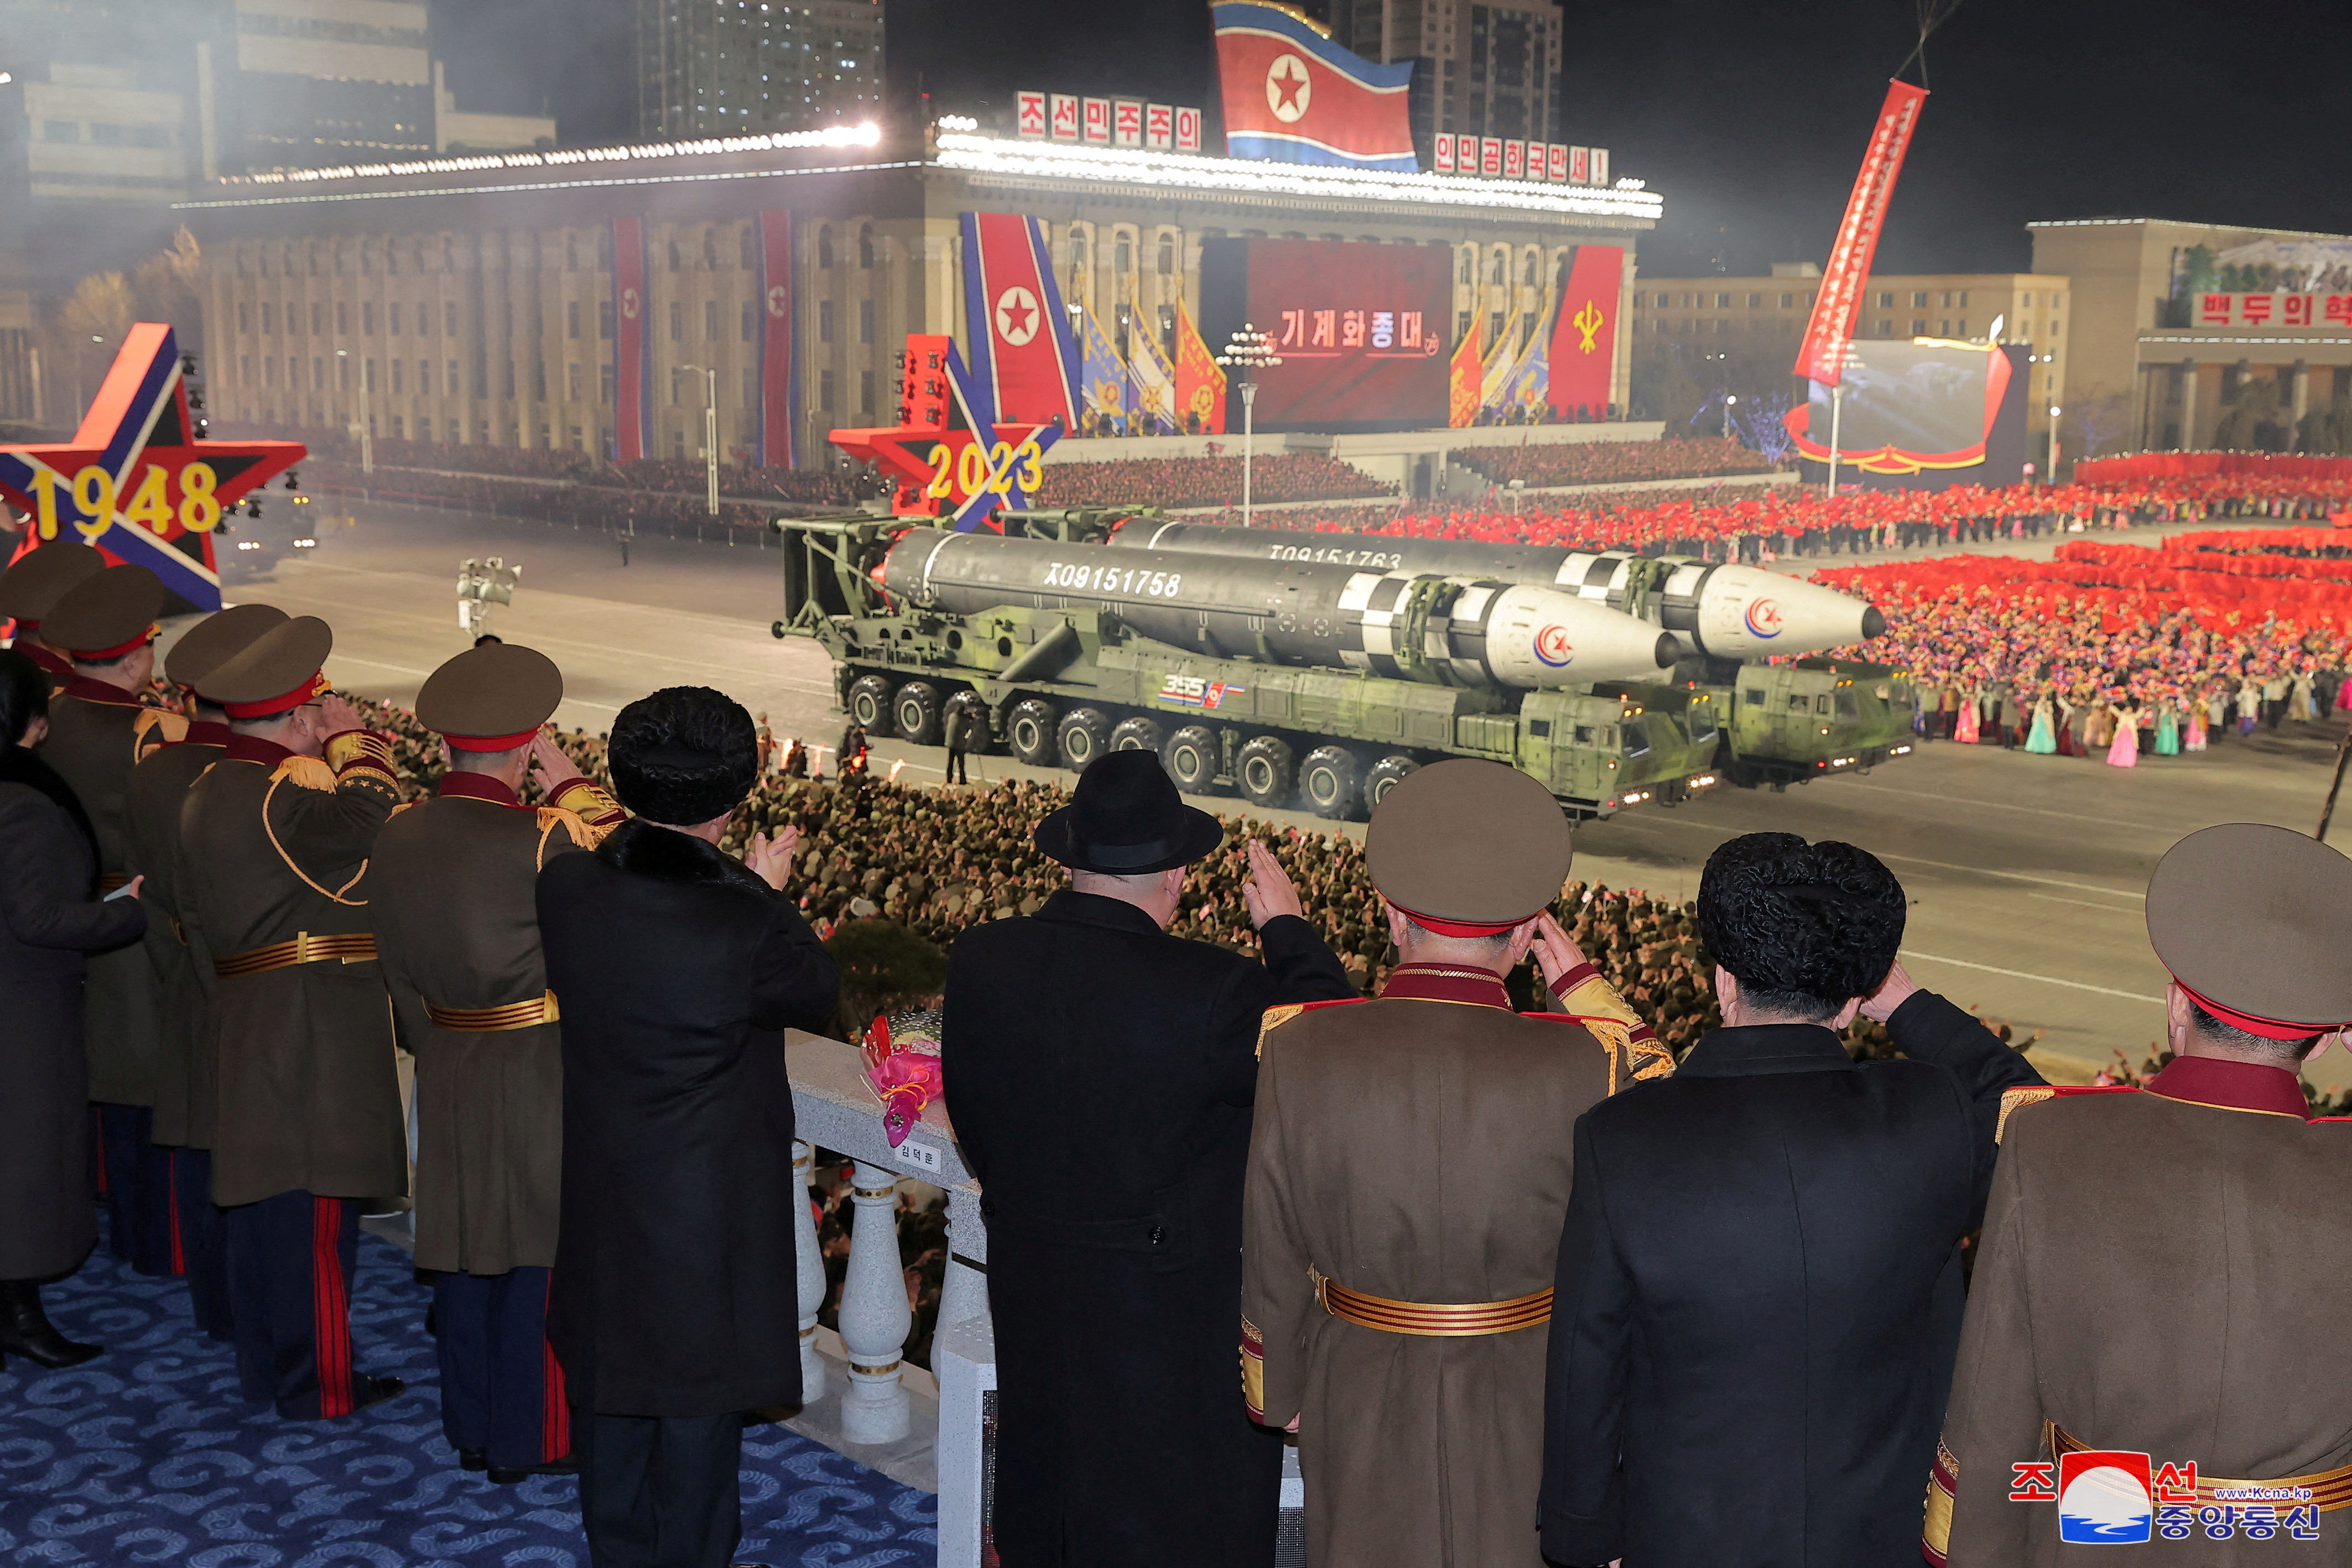 Kim Jong-un y su cúpula militar saluda el paso de los cohete. El país ha seguido adelante con su programa de misiles balísticos, lanzando misiles más grandes y avanzados que nunca, a pesar de las resoluciones y sanciones del Consejo de Seguridad de la ONU